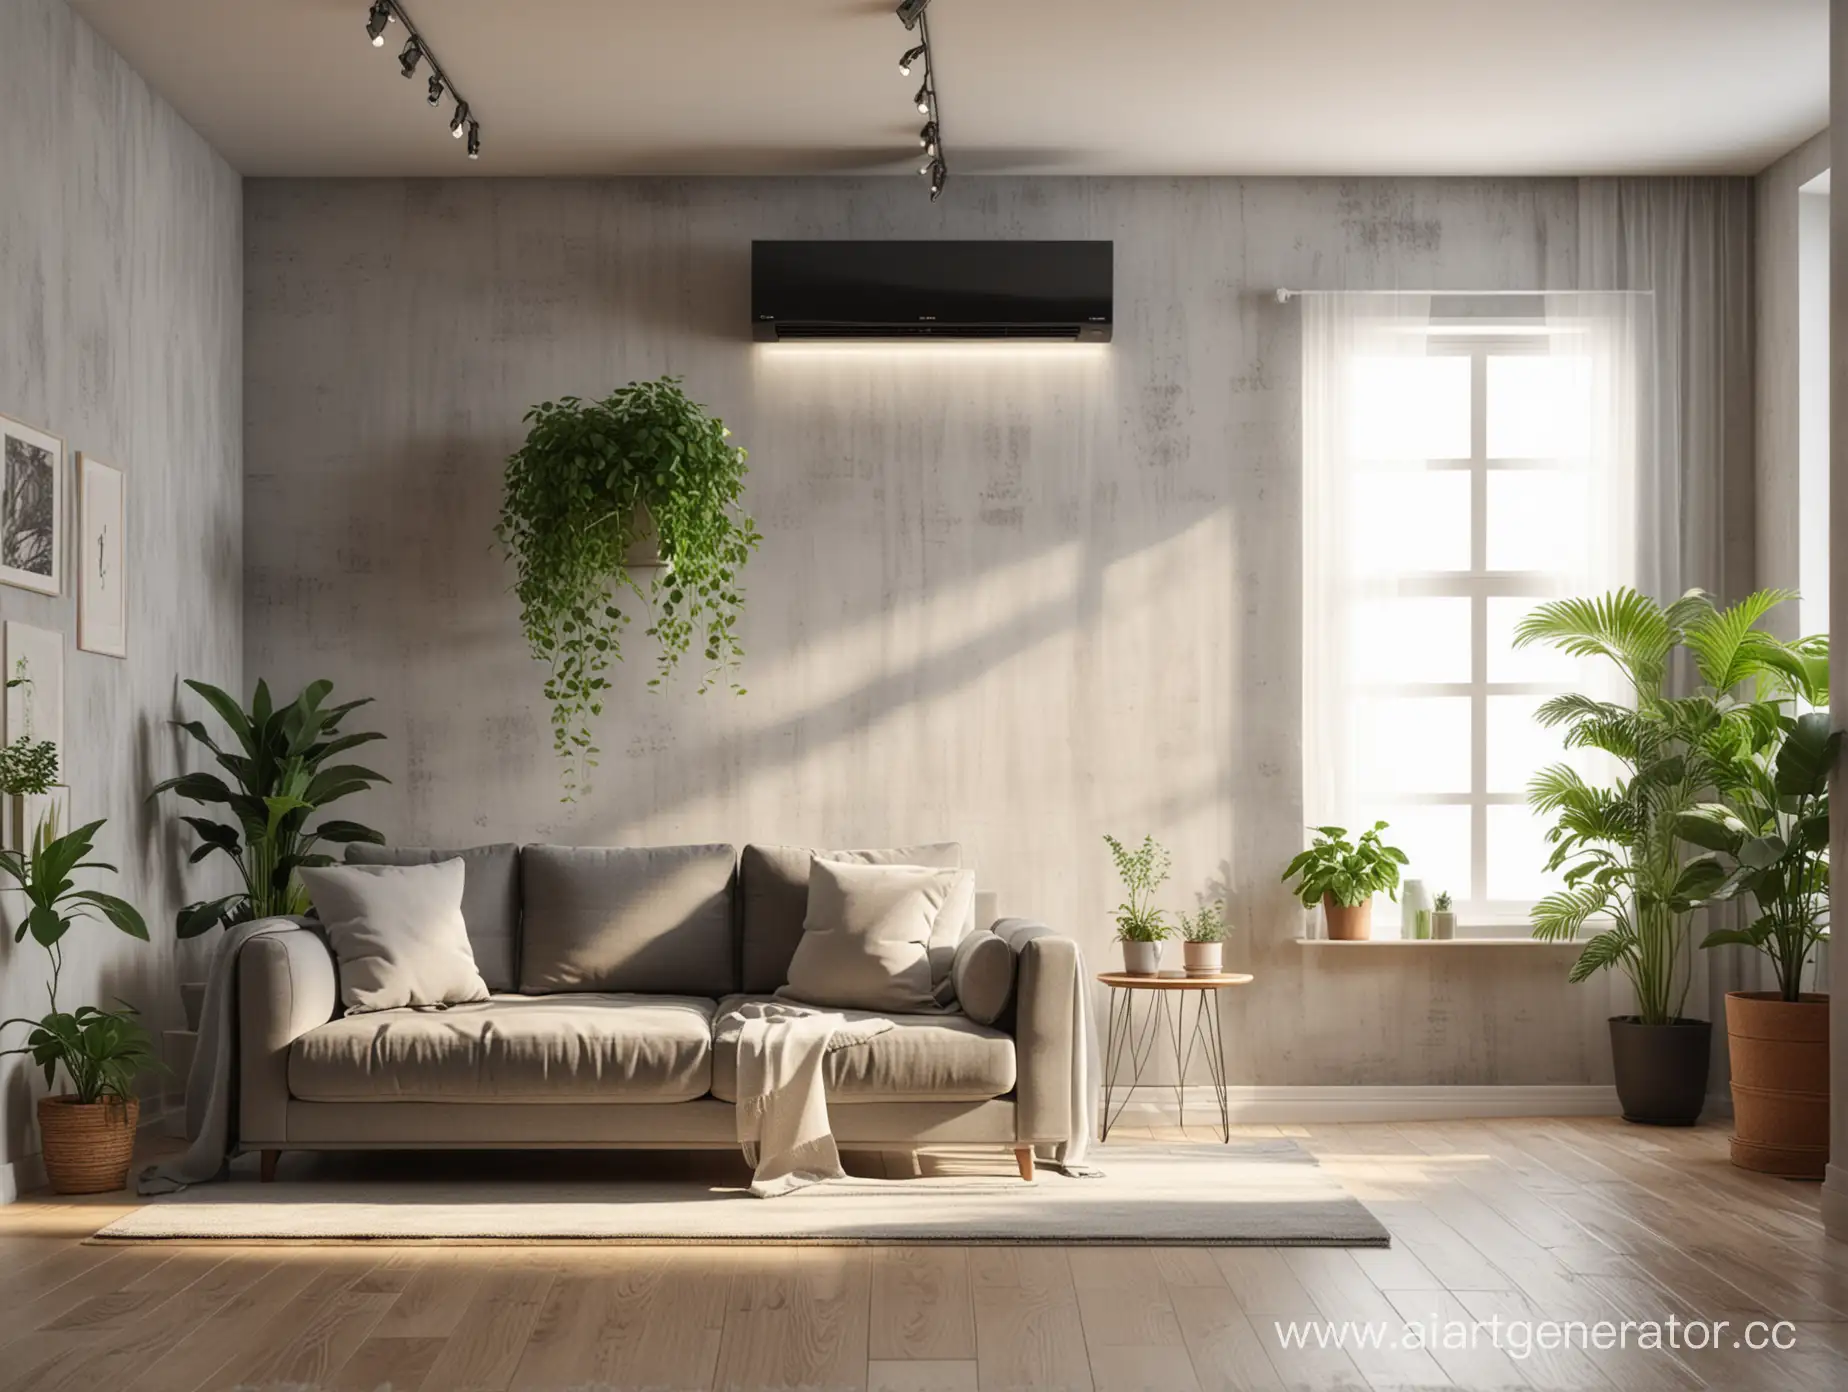 серый диван посередине комнаты, над ним на стене висит черный кондиционер, рядом с диваном стоят зеленые растения, стена позади дивана светлая, сквозь окно пробиваются лучи света, реализм